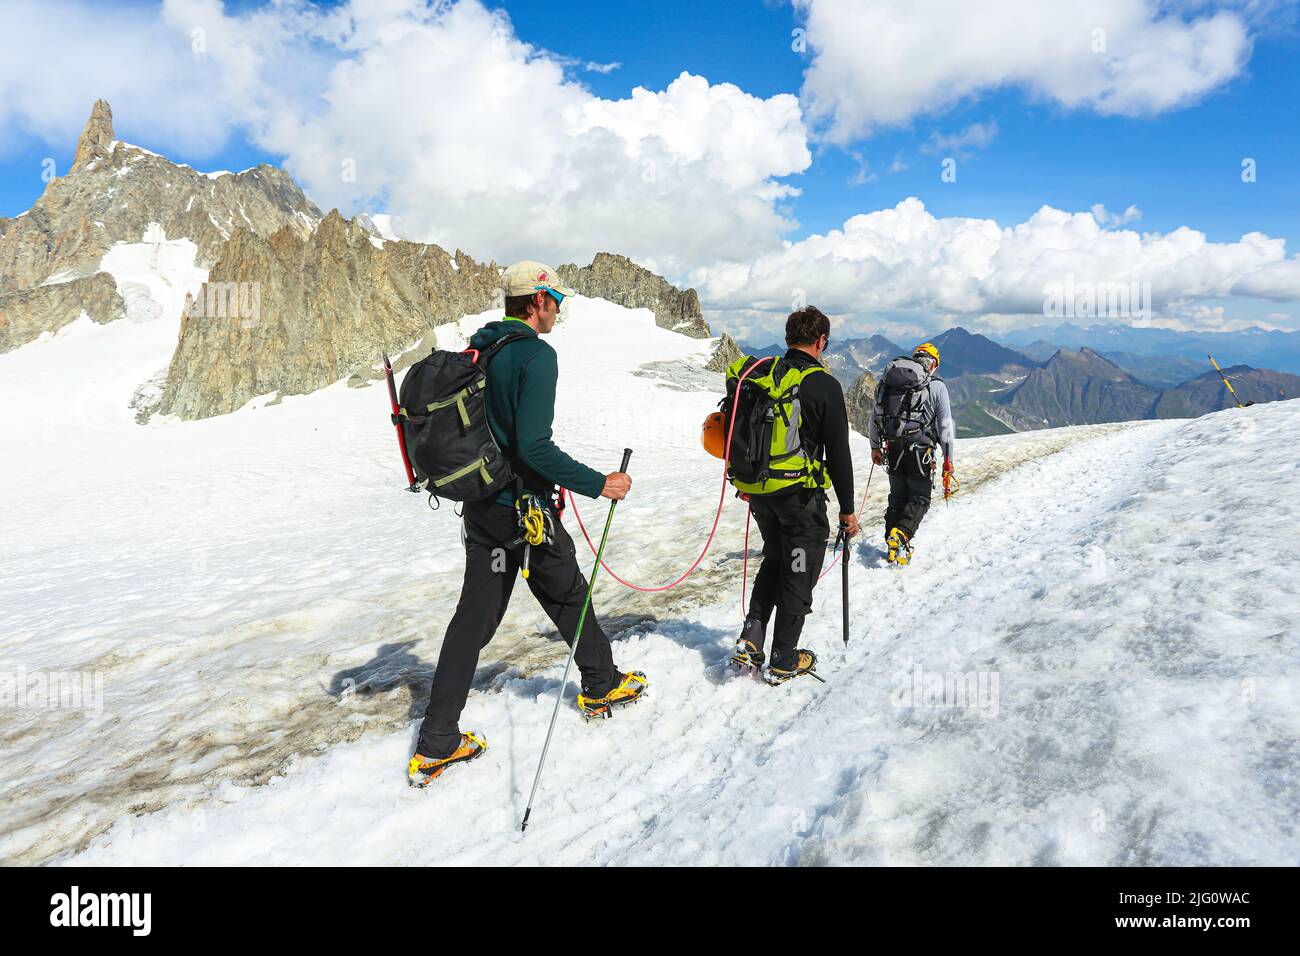 Grimpeurs sur le glacier du géant du massif du Mont blanc. Chamonix, France - août 2018 Banque D'Images